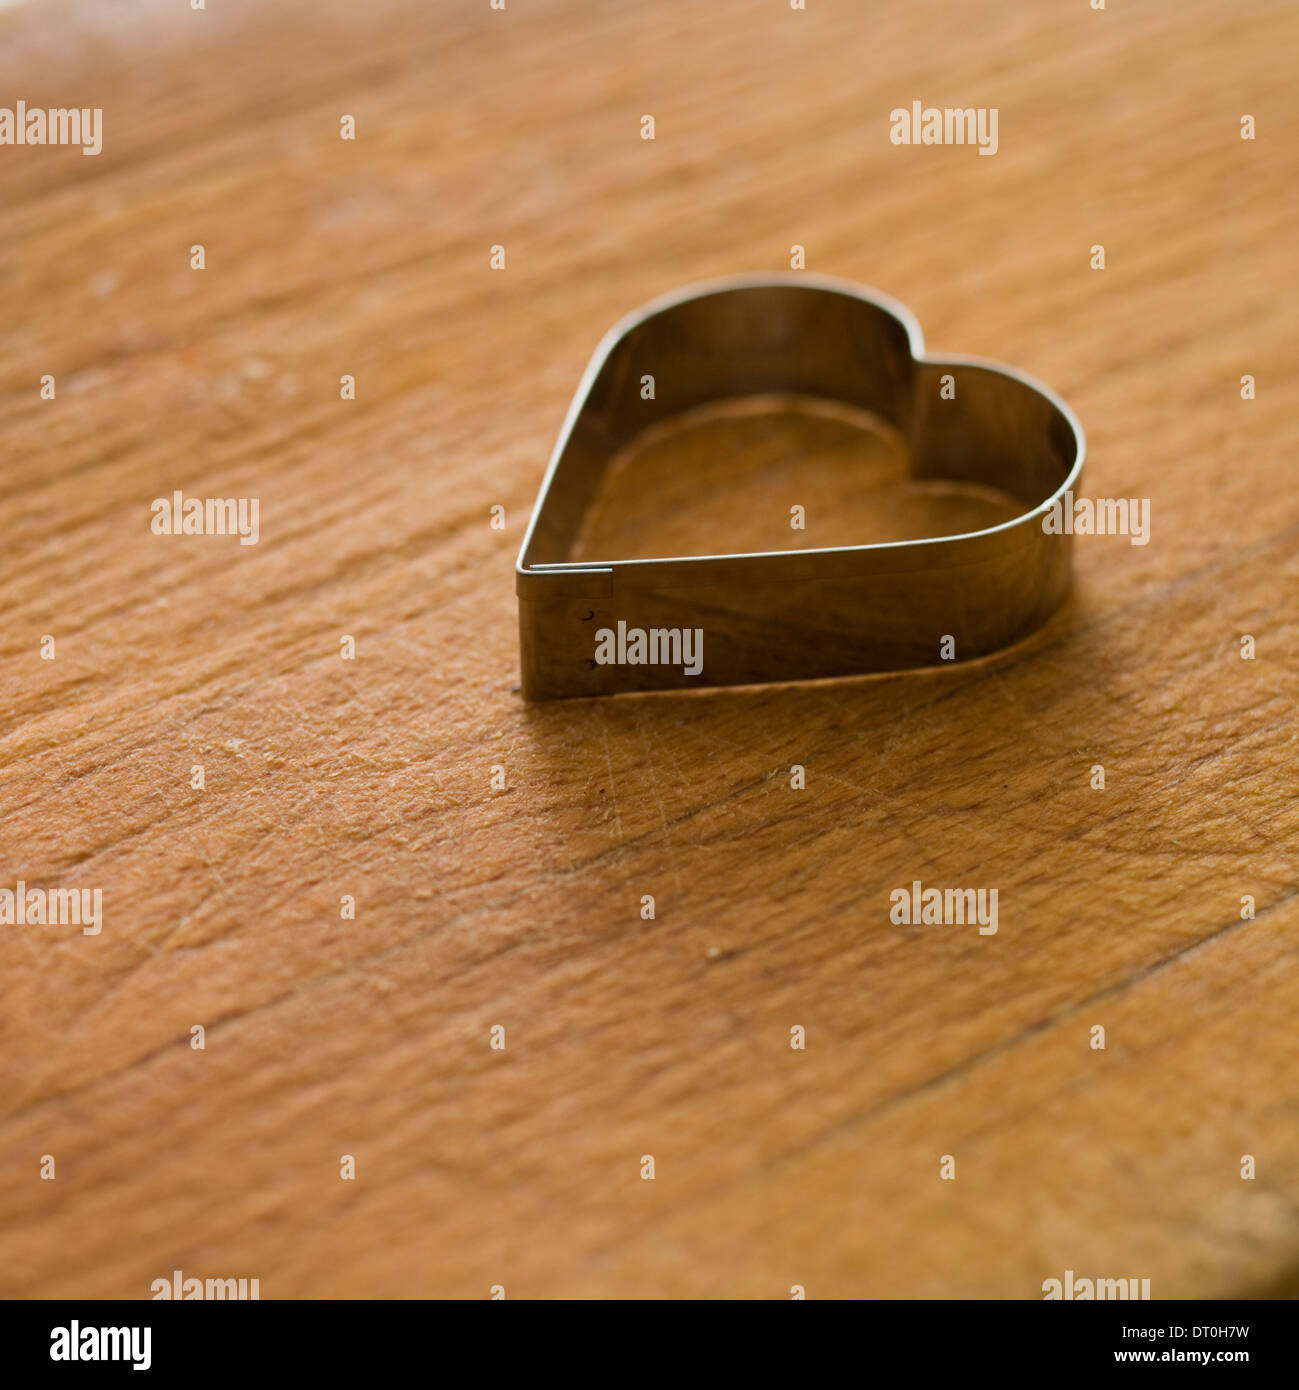 En forme de coeur, métal, coupe-pâte sur une planche de bois. Banque D'Images